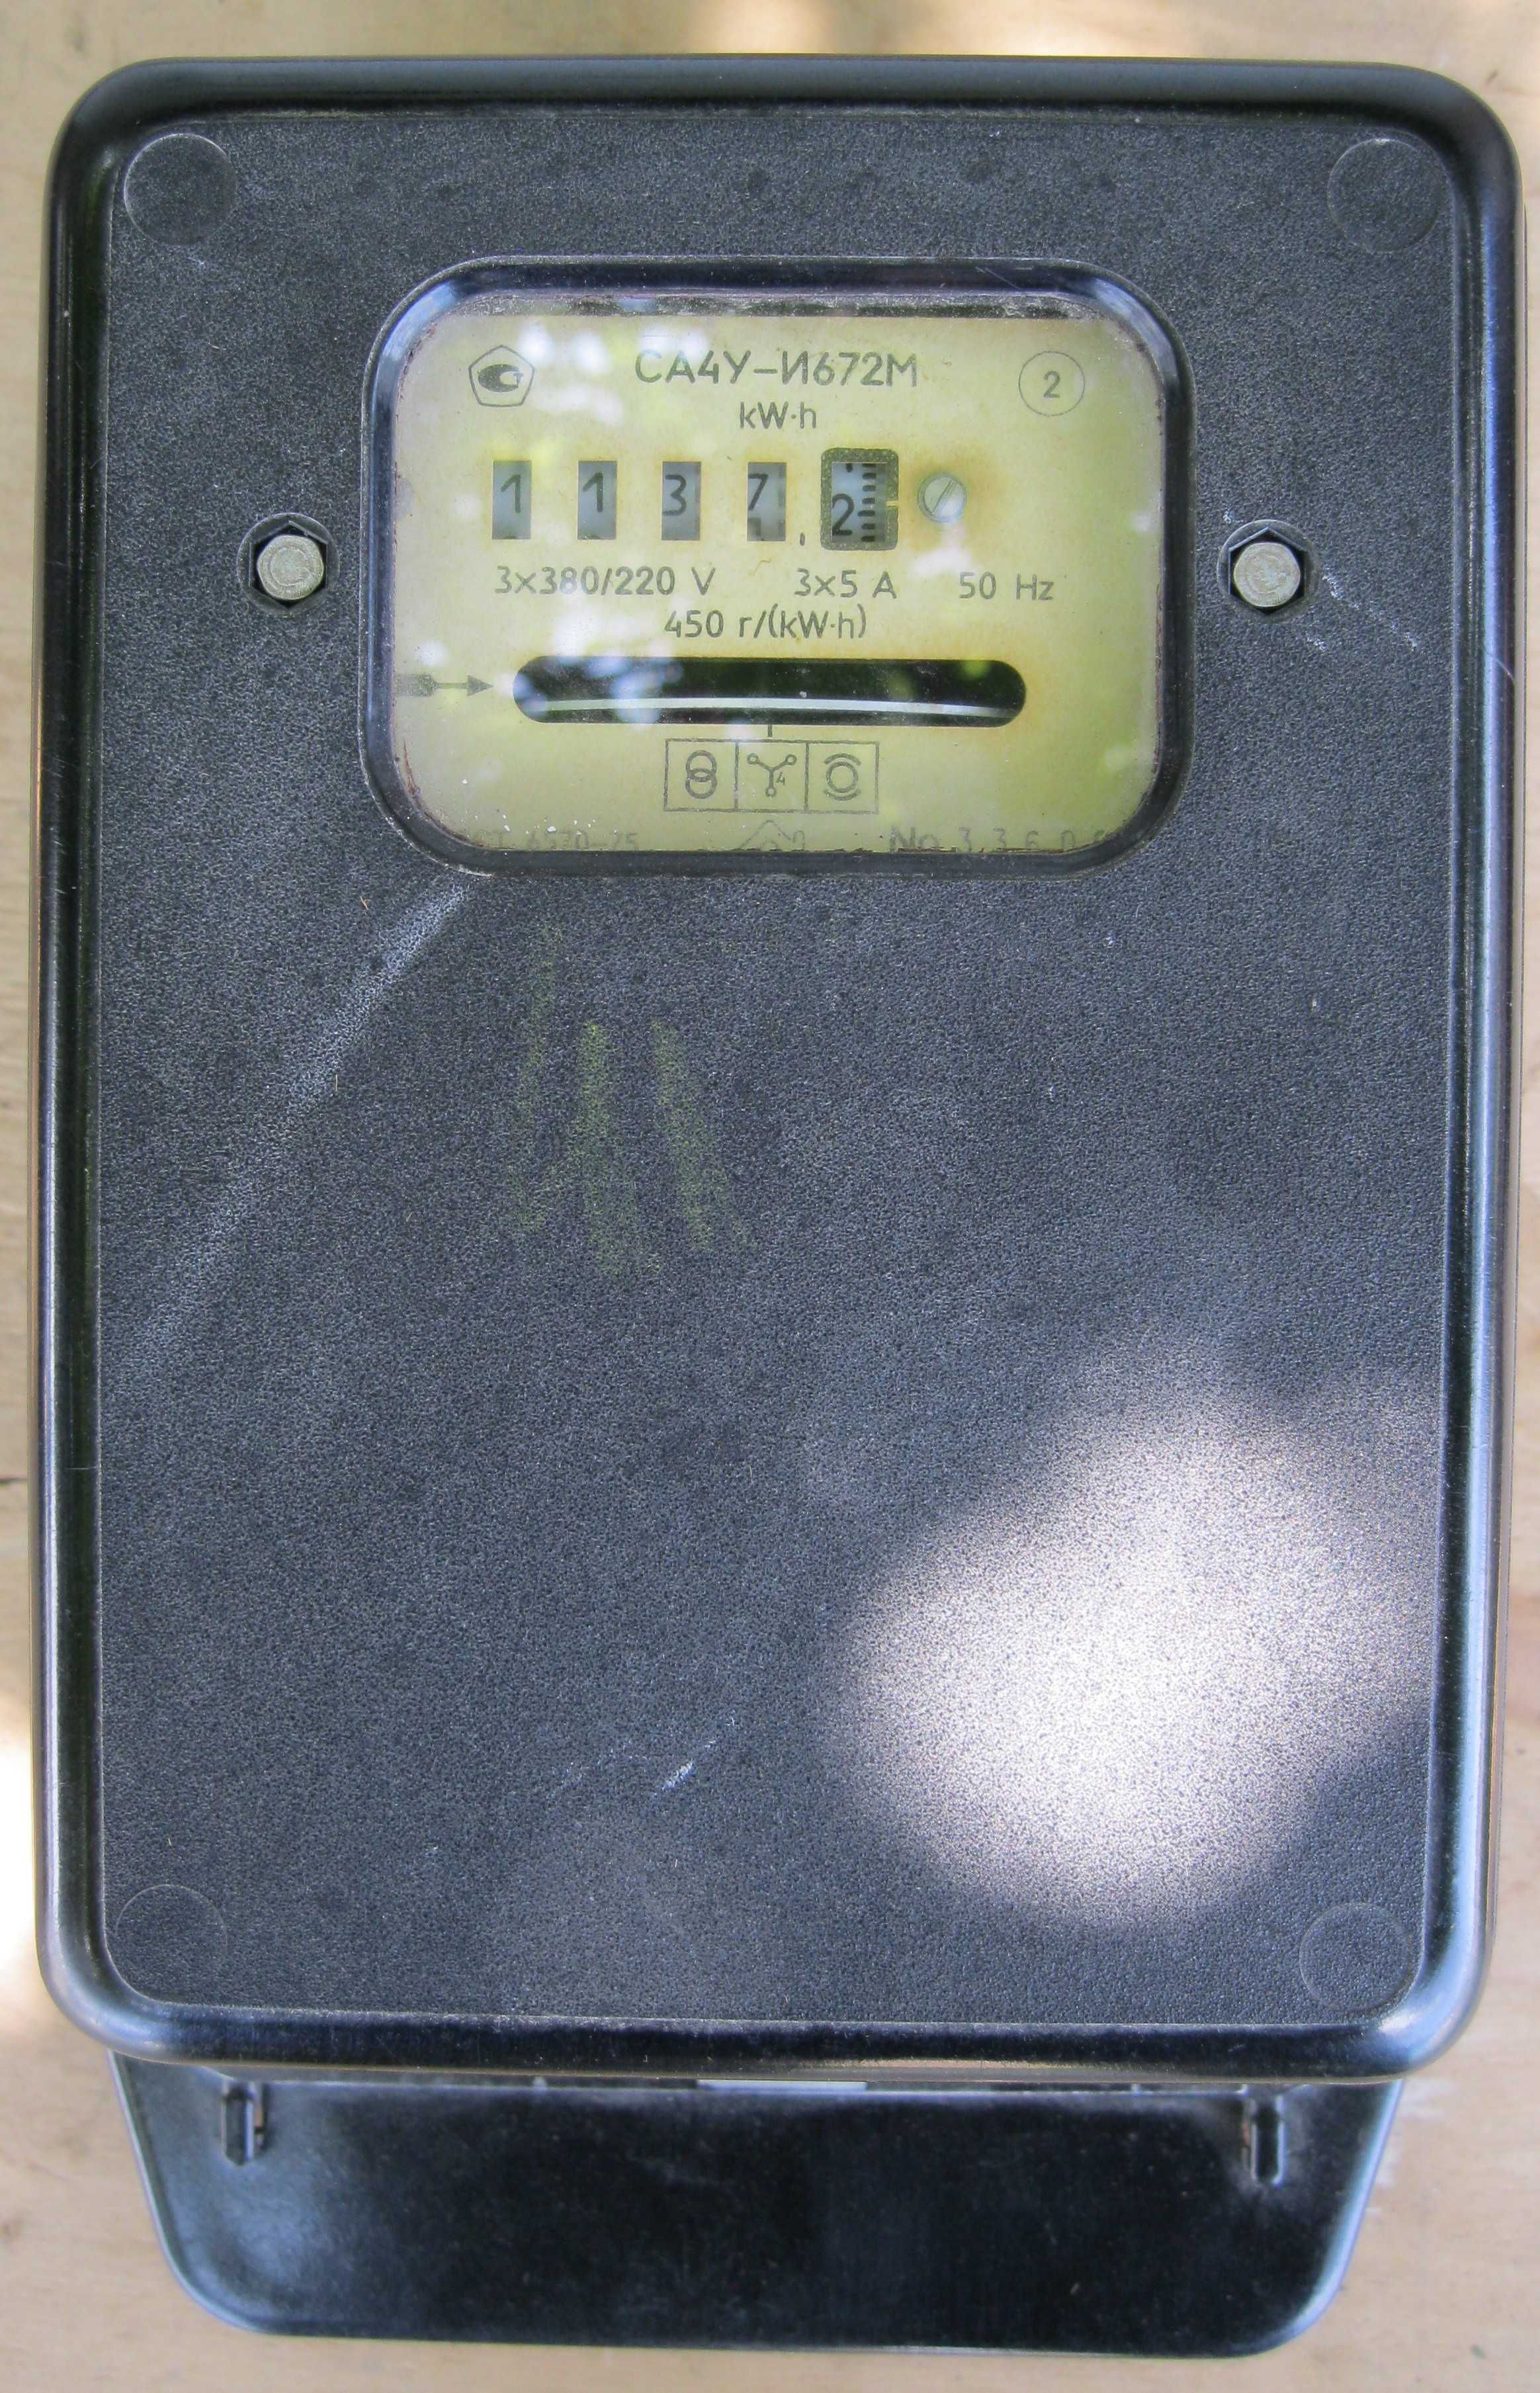 Трехфазный электросчетчик СА4У И672